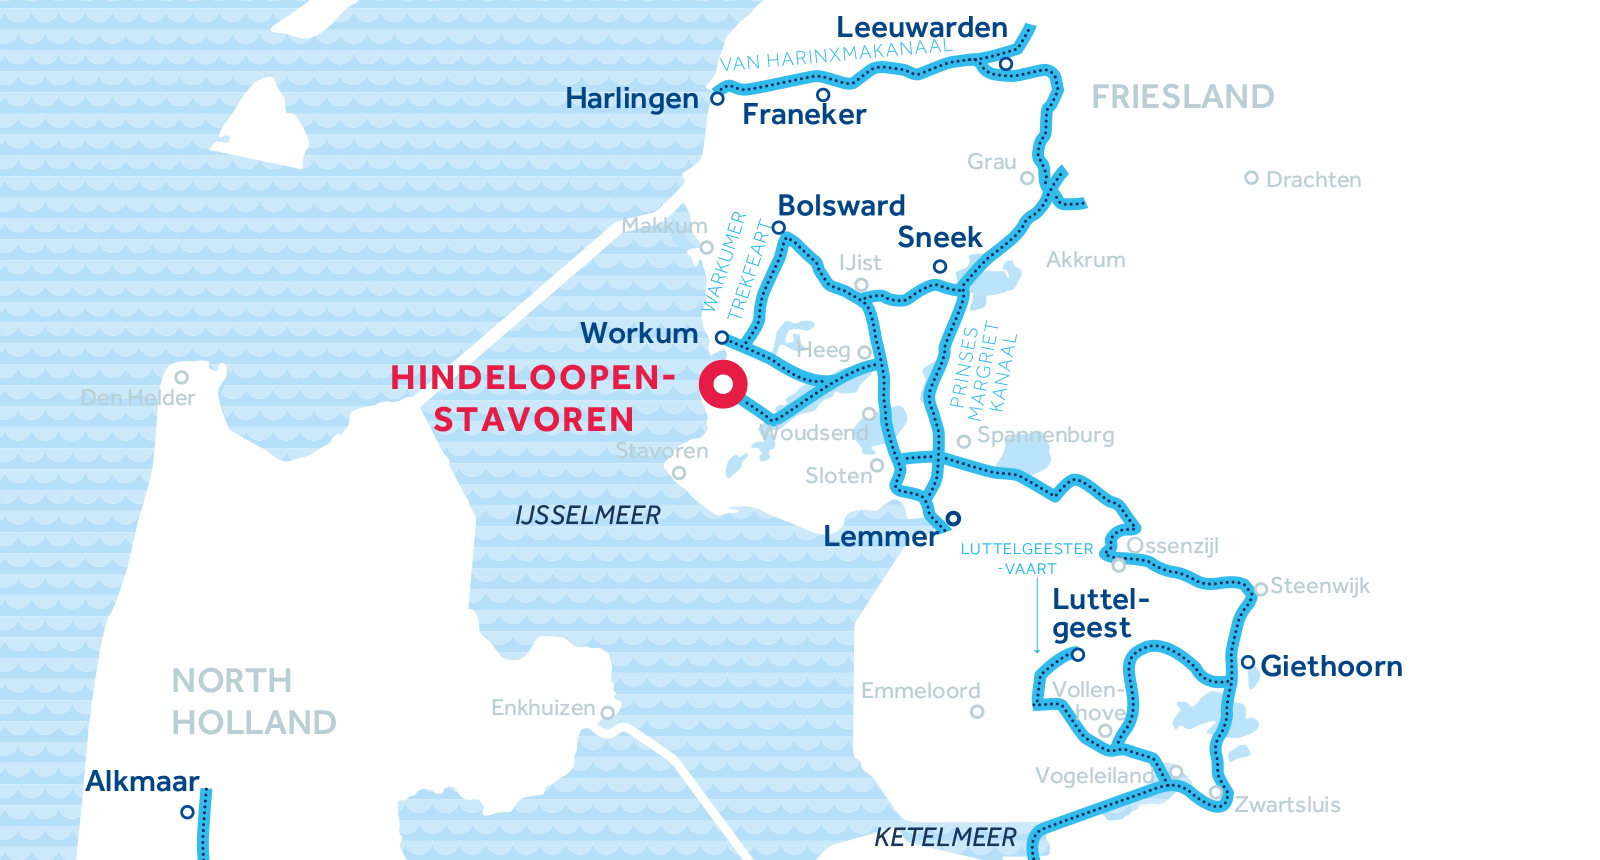 De kaart van vaarregio's Friesland